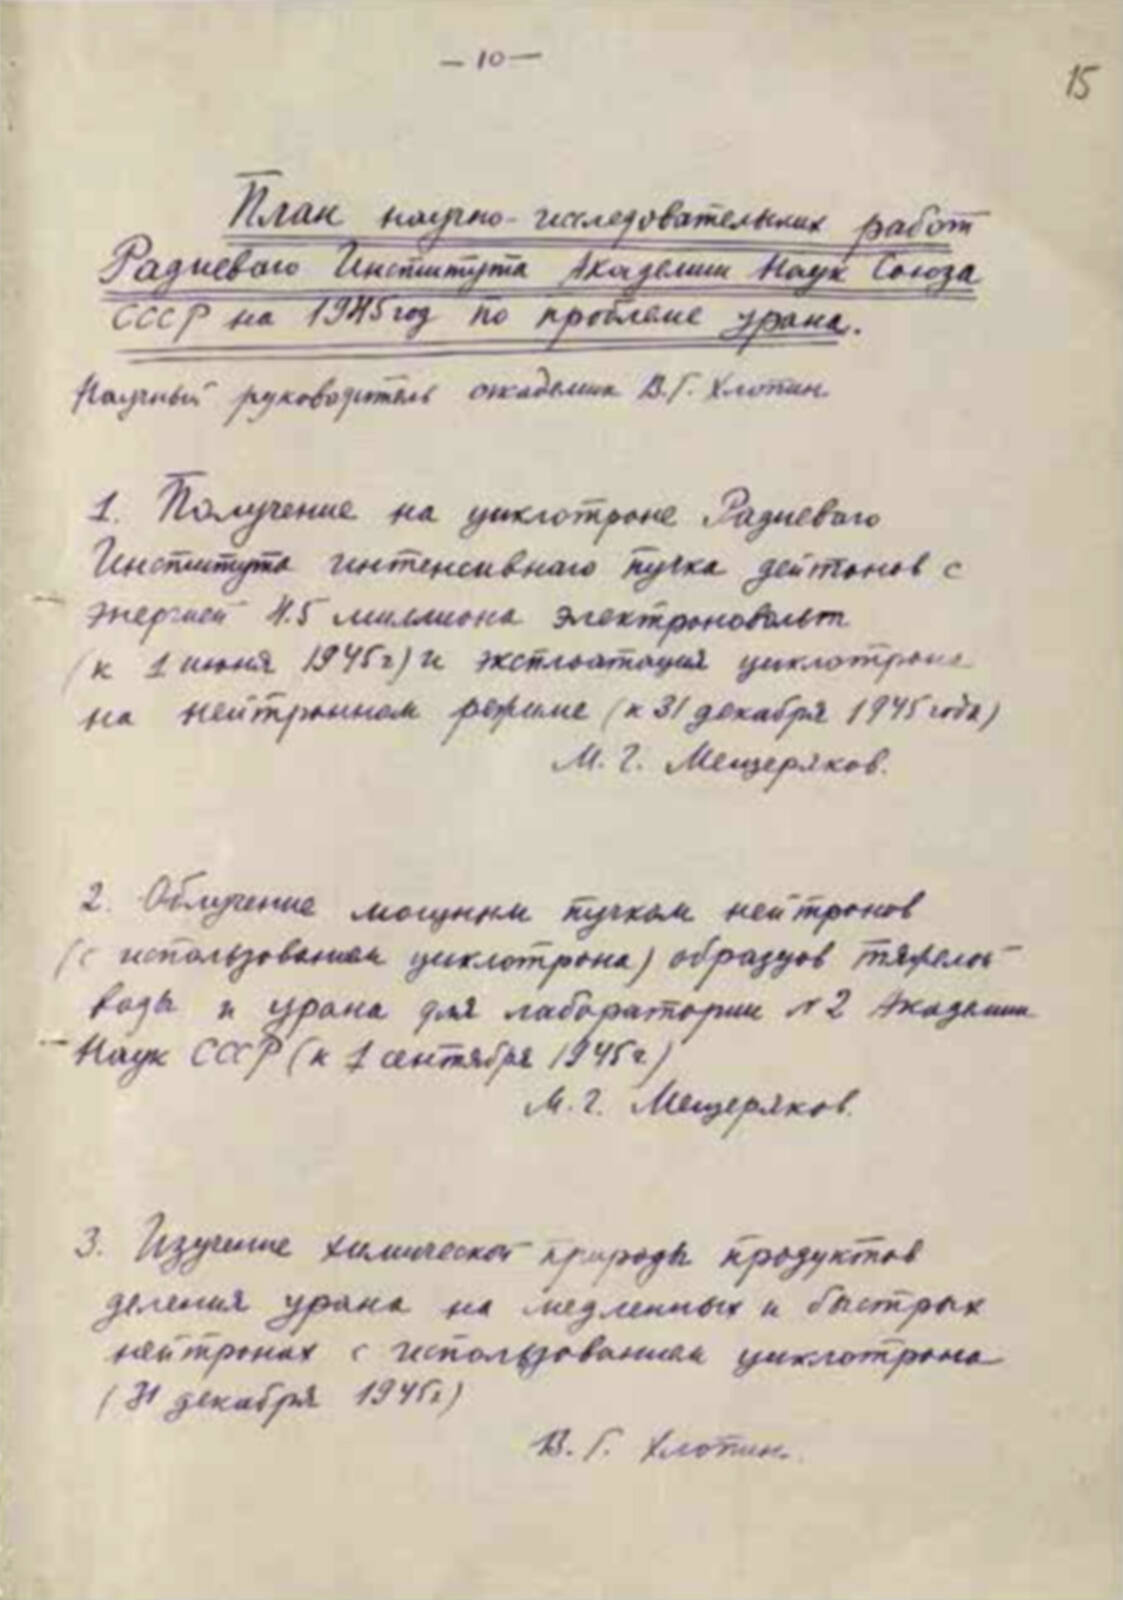 План научно-исследовательских работ Радиевого института по проблеме урана на 1945 г.